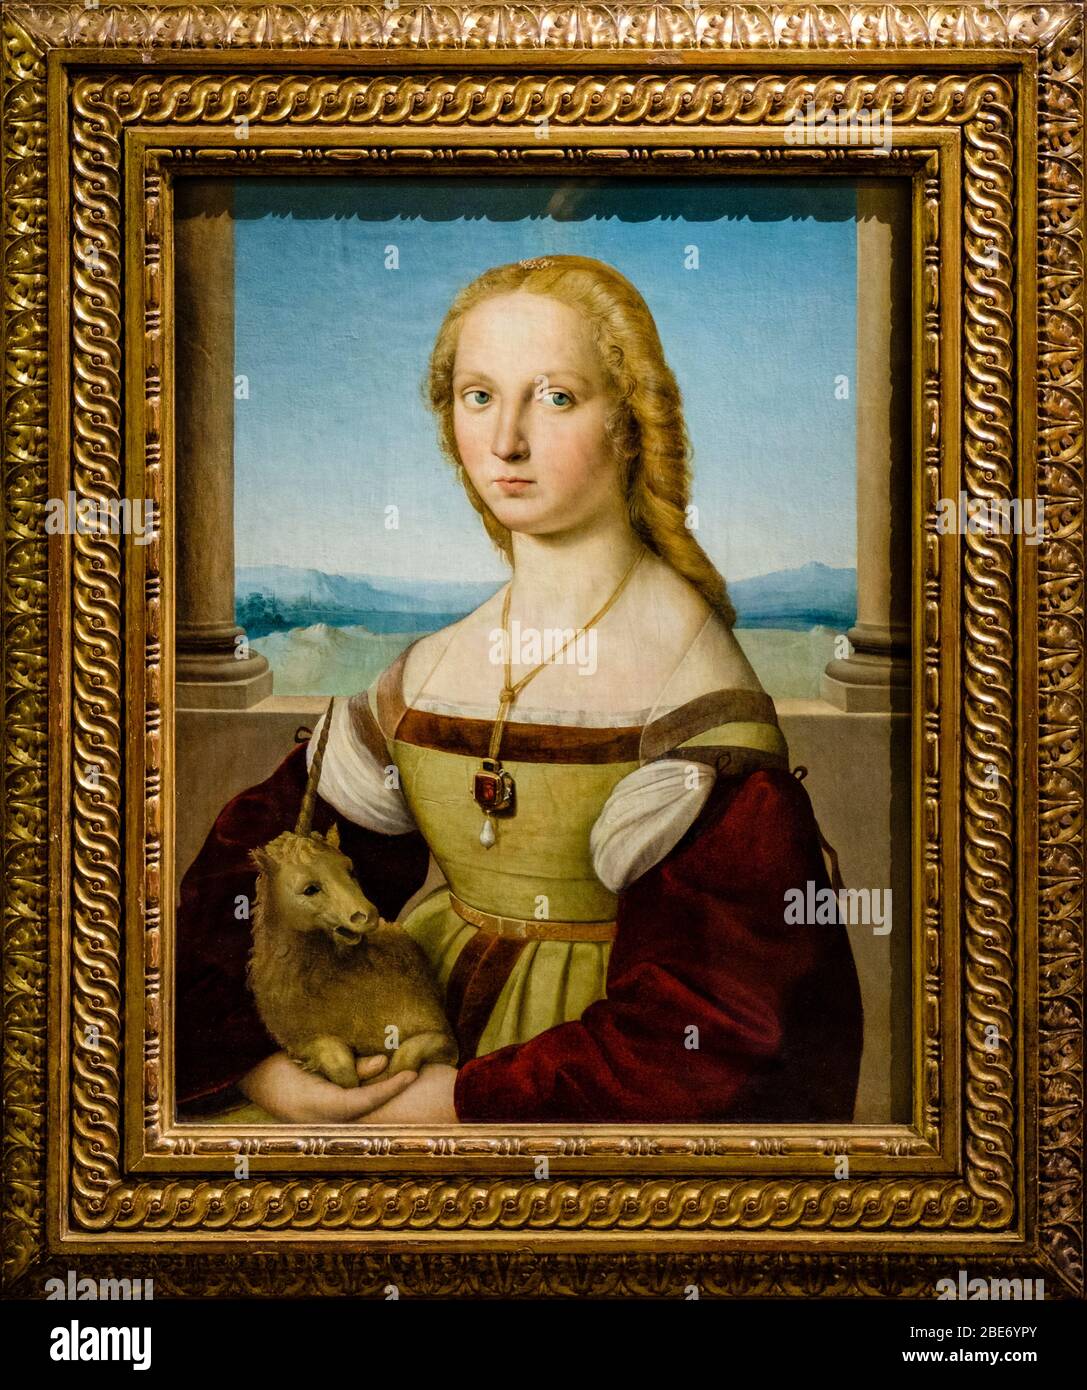 Einhorndame, Porträt einer jungen Frau mit Einhorn, Renaissance-Gemälde von Rafaello Sanzio da Urbino (Raphael), Galleria Borghese, Rom, Italien. Stockfoto